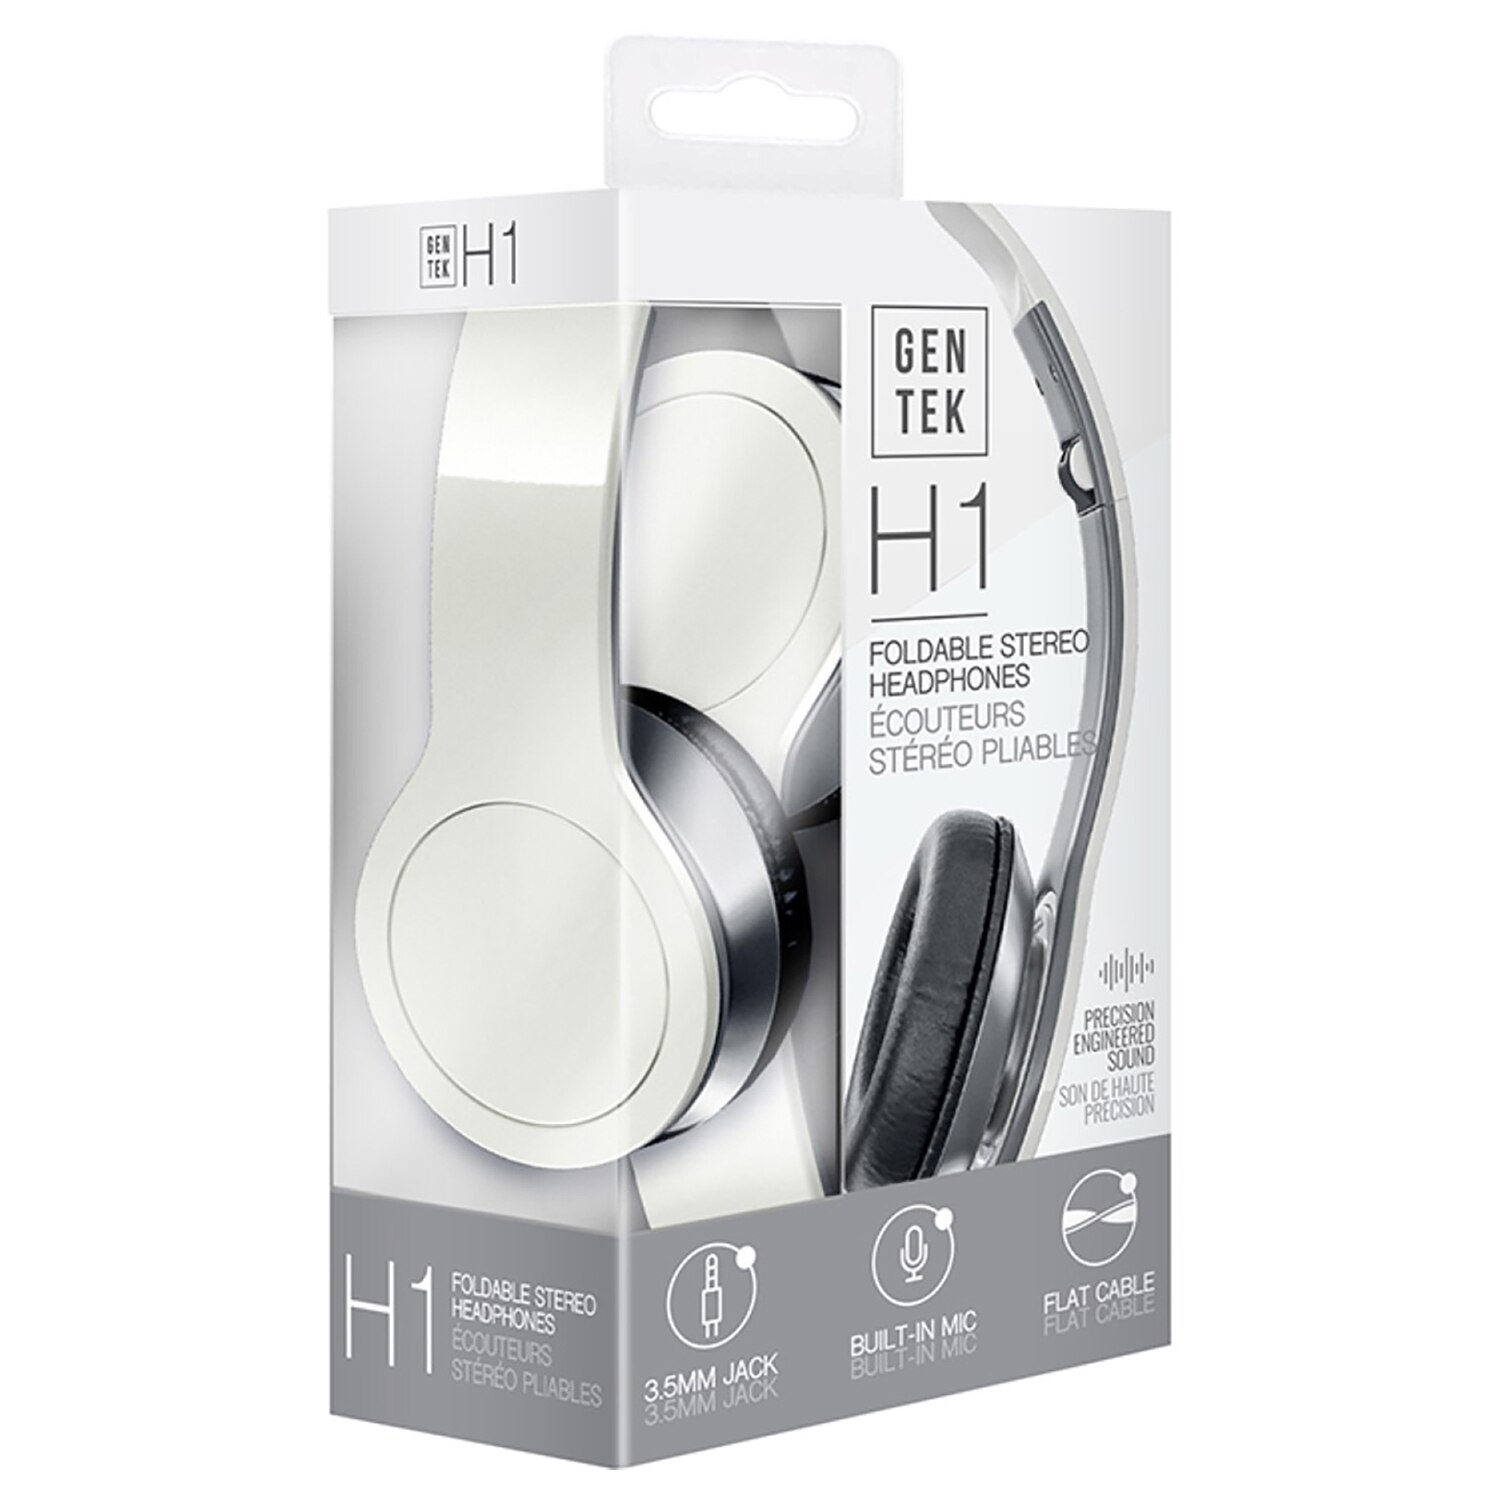  GENTEK H1 Foldable Stereo Headphones 